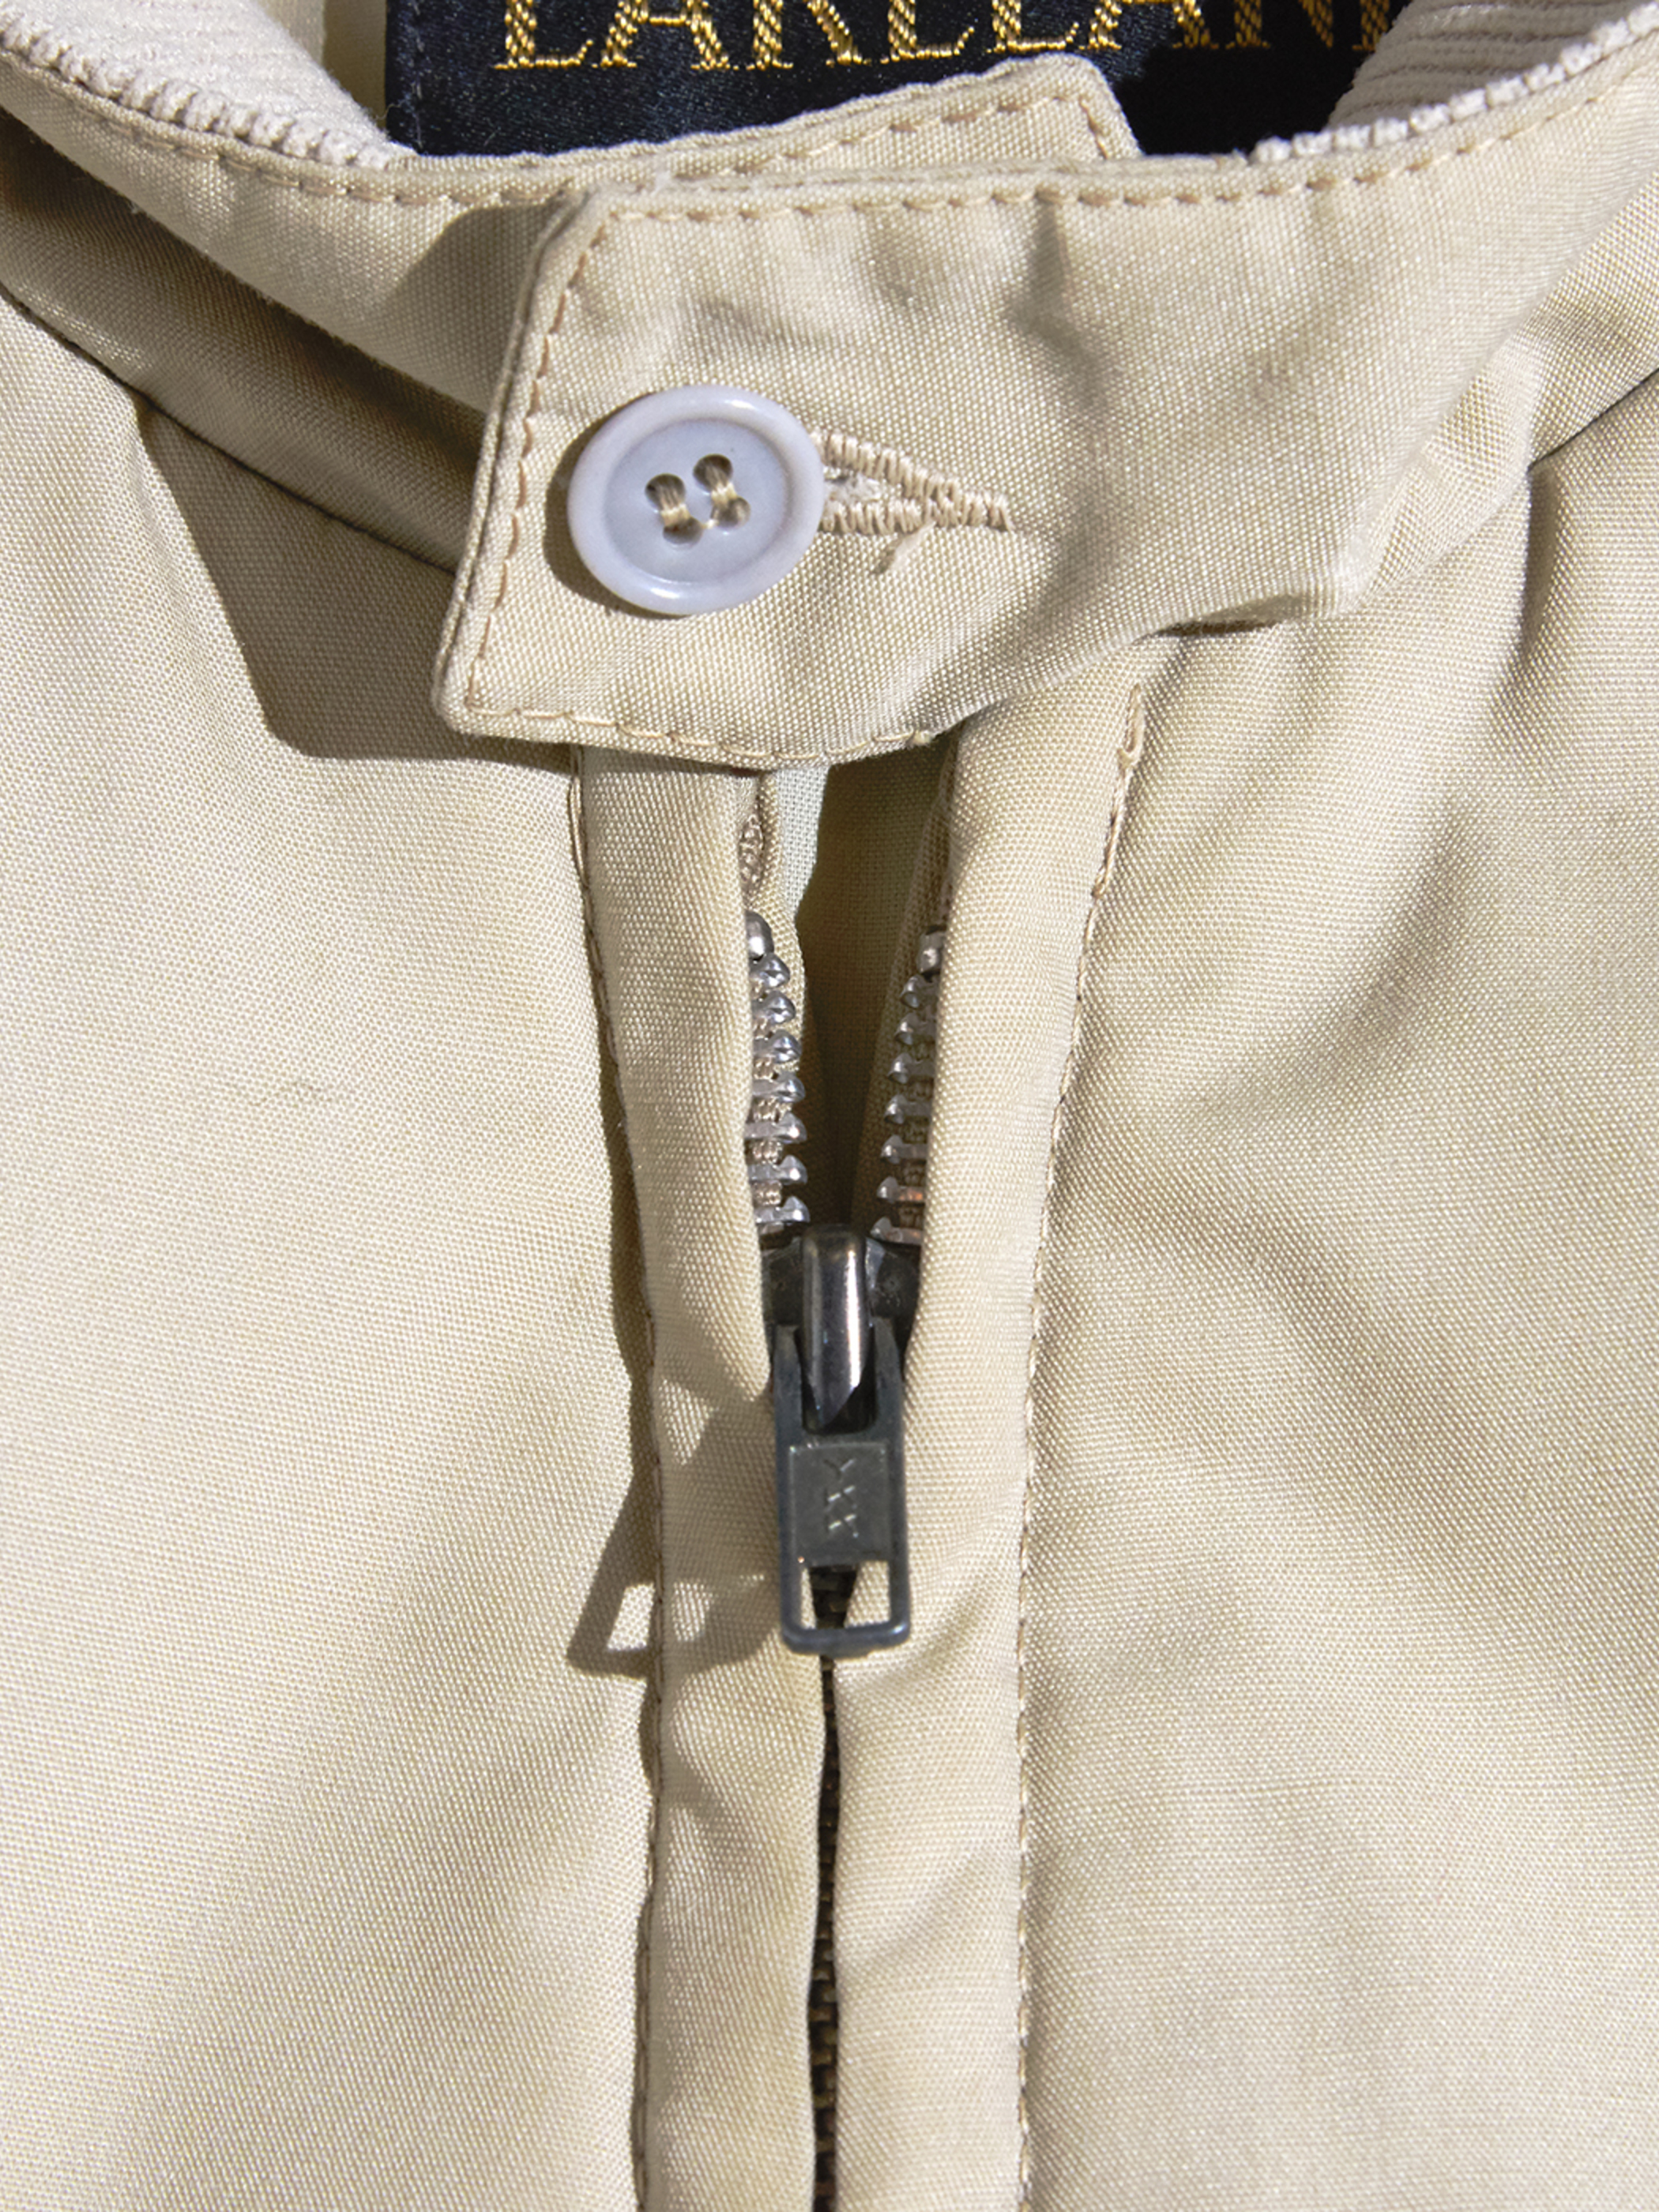 1970s "LAKELAND" zip up jacket -BEIGE-